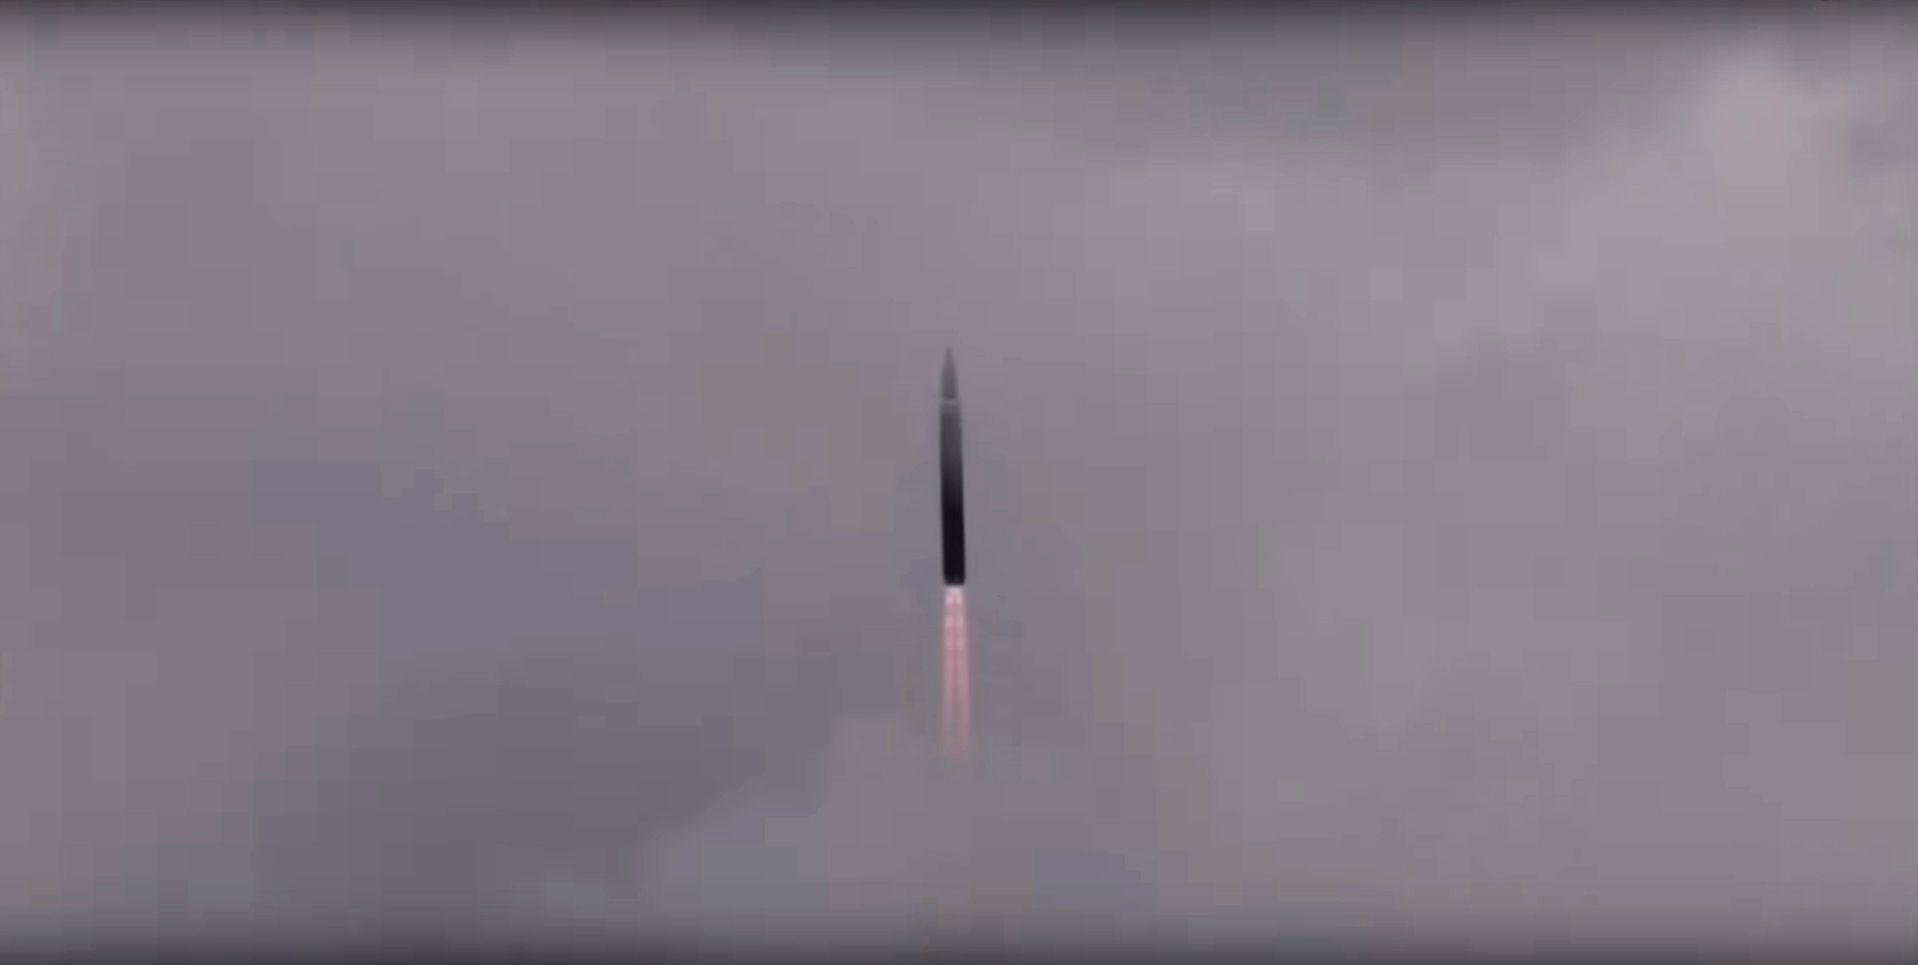 Βόρεια Κορέα πύραυλοι: Δοκιμαστική εκτόξευση δύο βλημάτων προς την θάλασσα